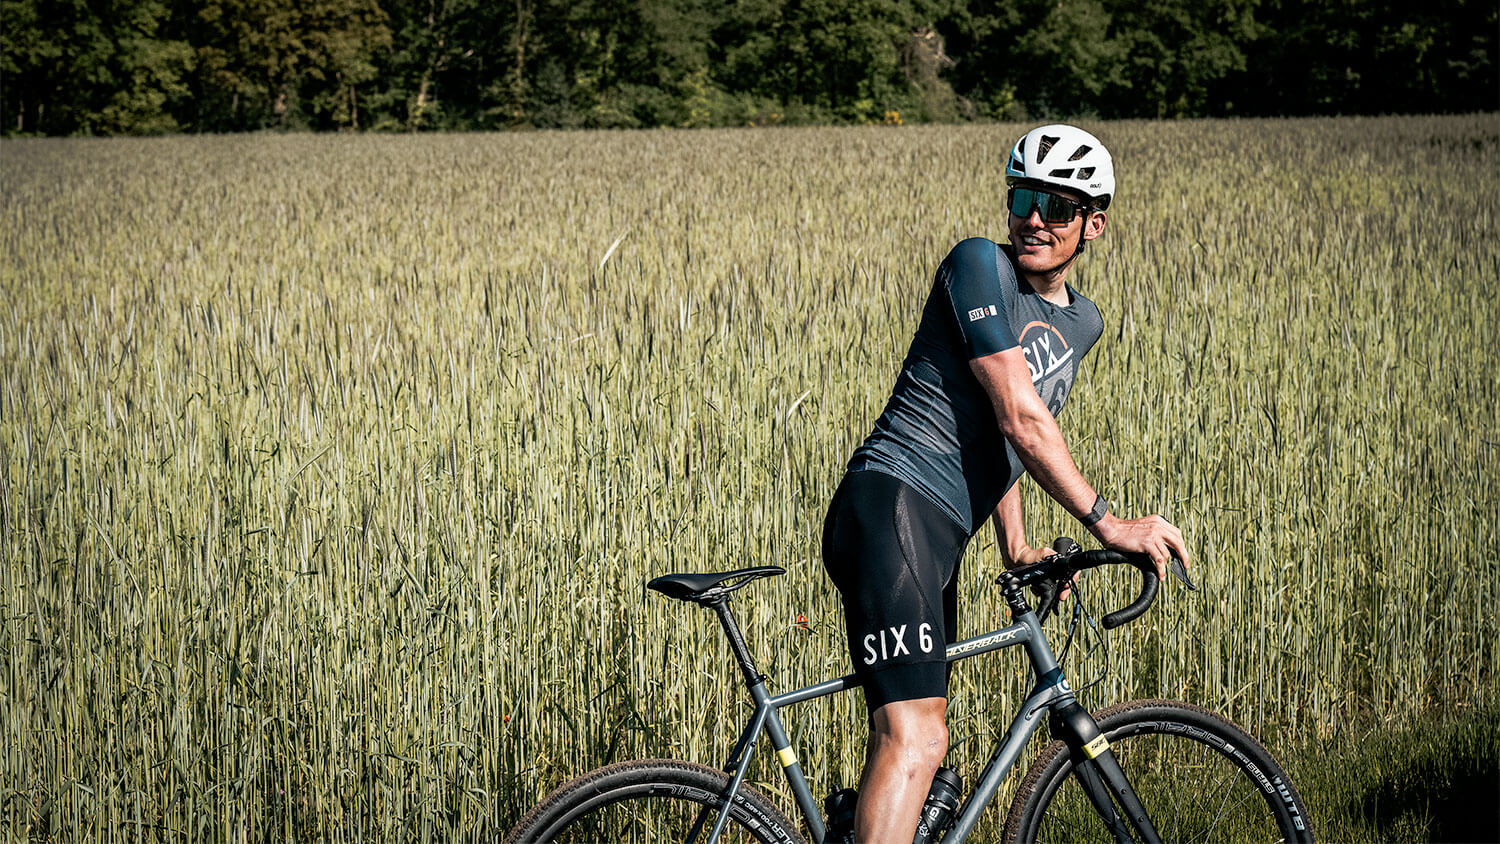 De nieuwe AGU SIX6 heritage fietskleding is esthetisch opvallend